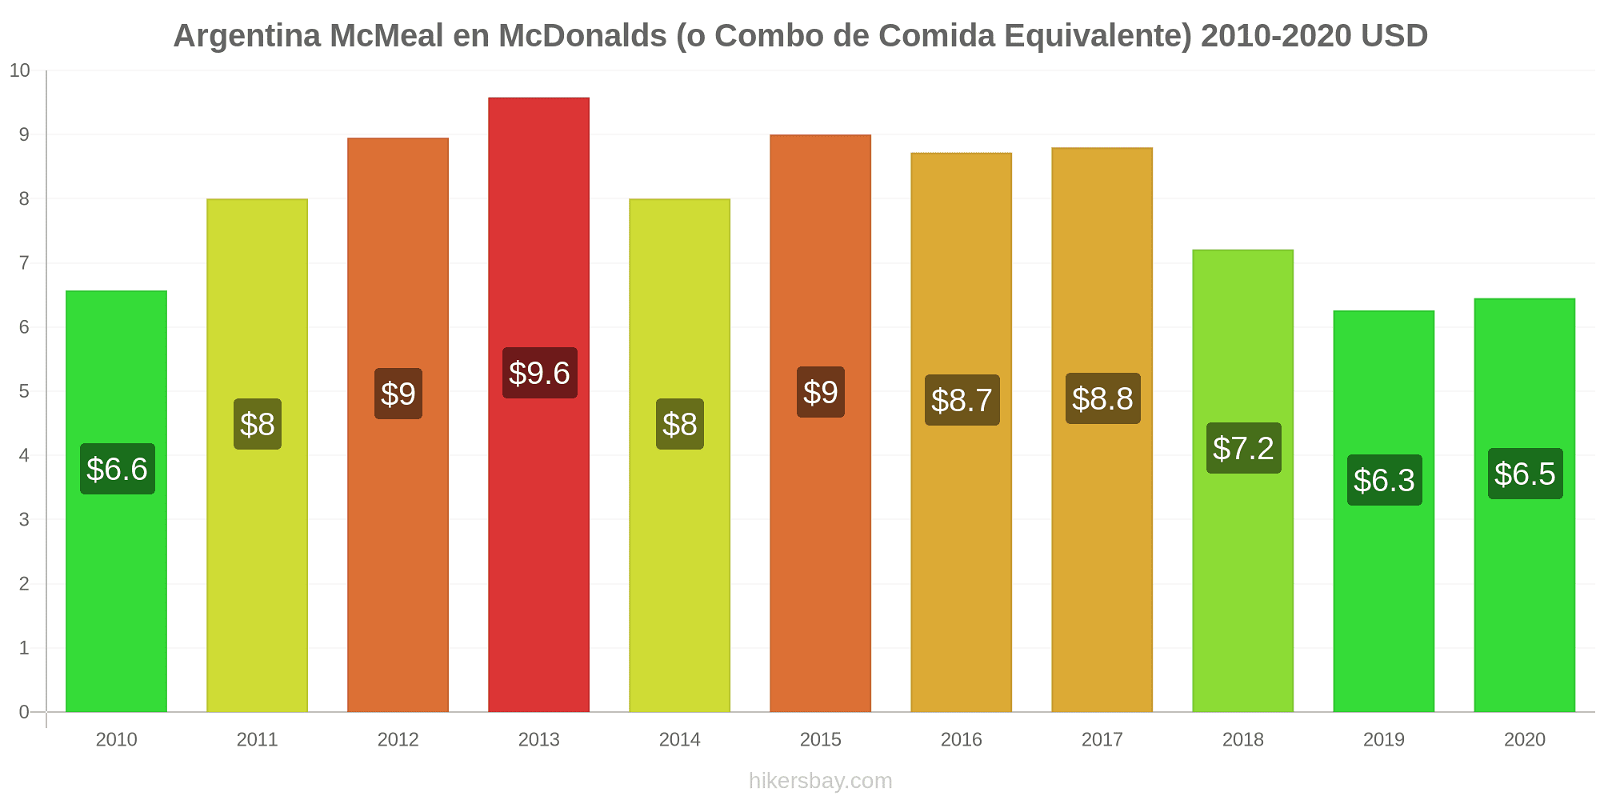 Argentina cambios de precios McMeal en McDonalds (o menú equivalente) hikersbay.com